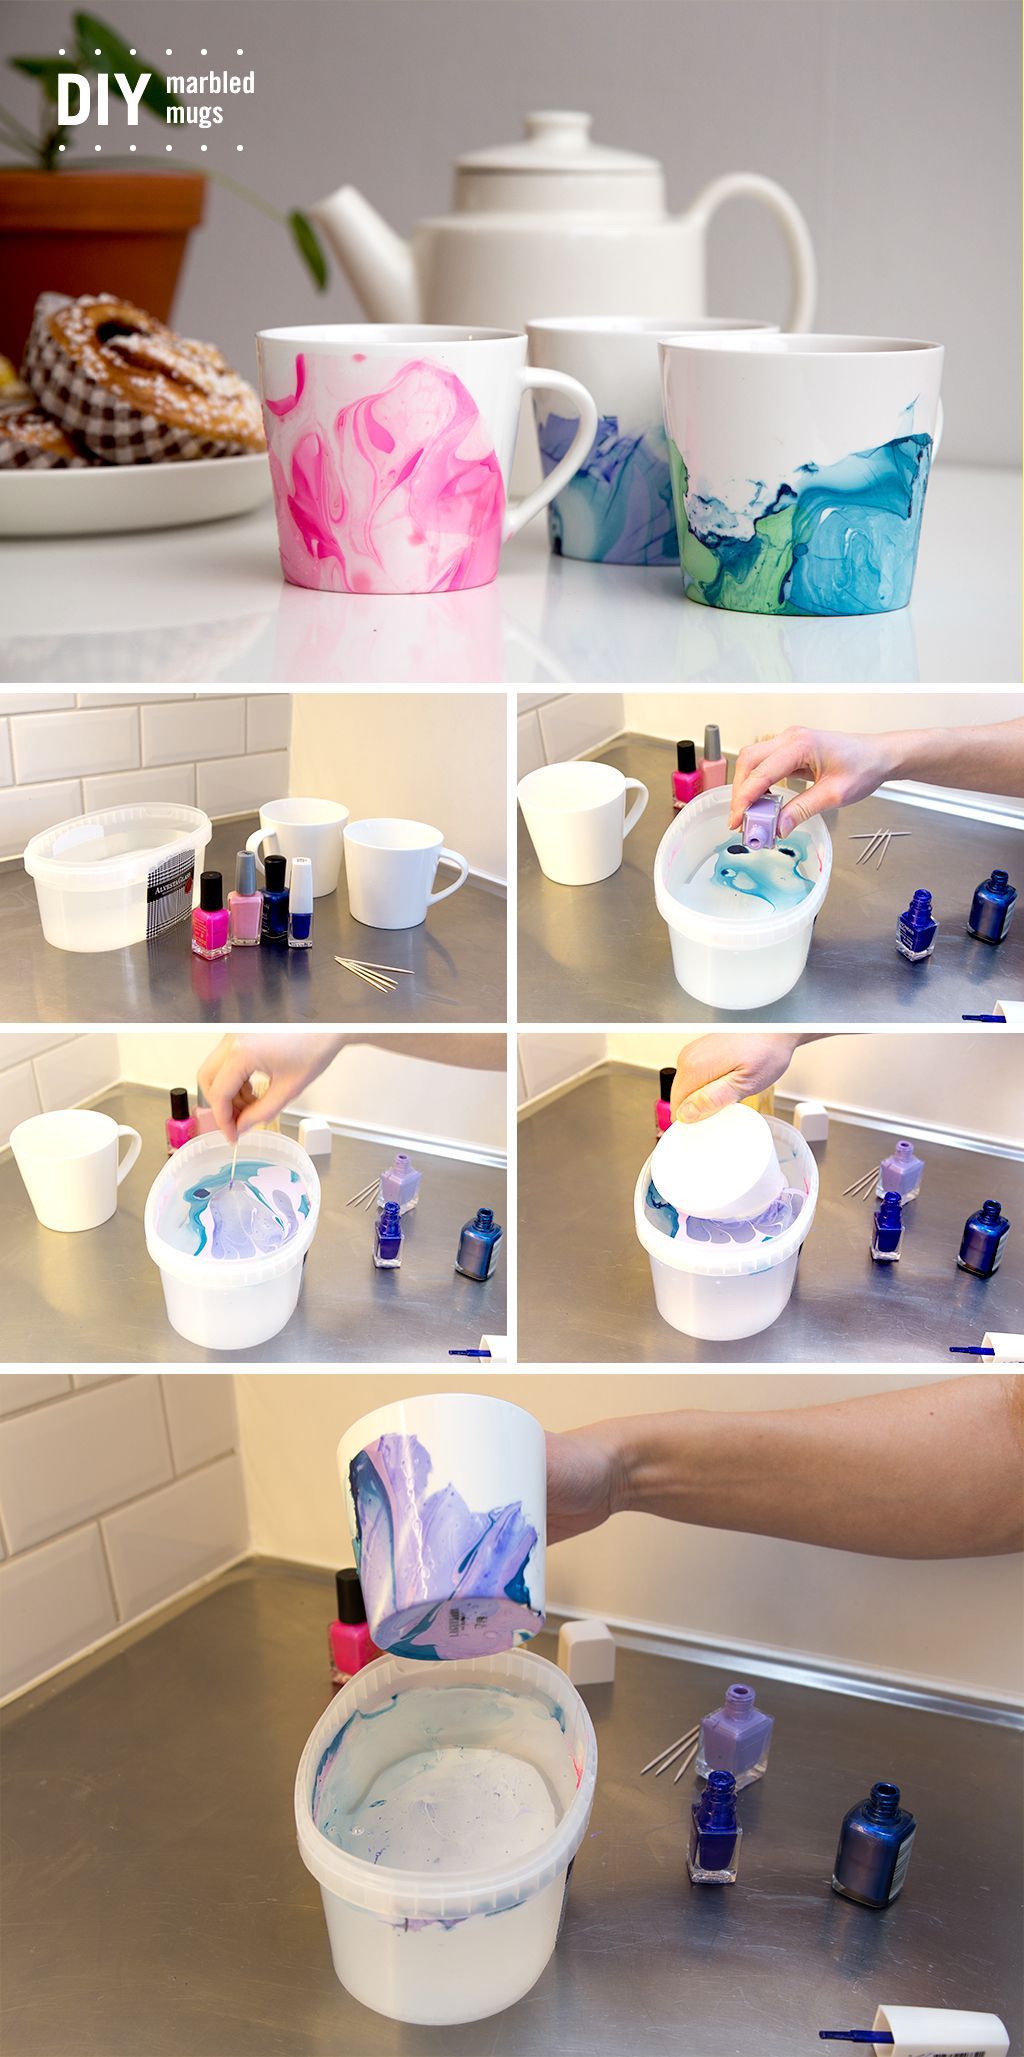 DIY - Marbled mugs - DIY - Marbled mugs -   19 diy Easy useful ideas